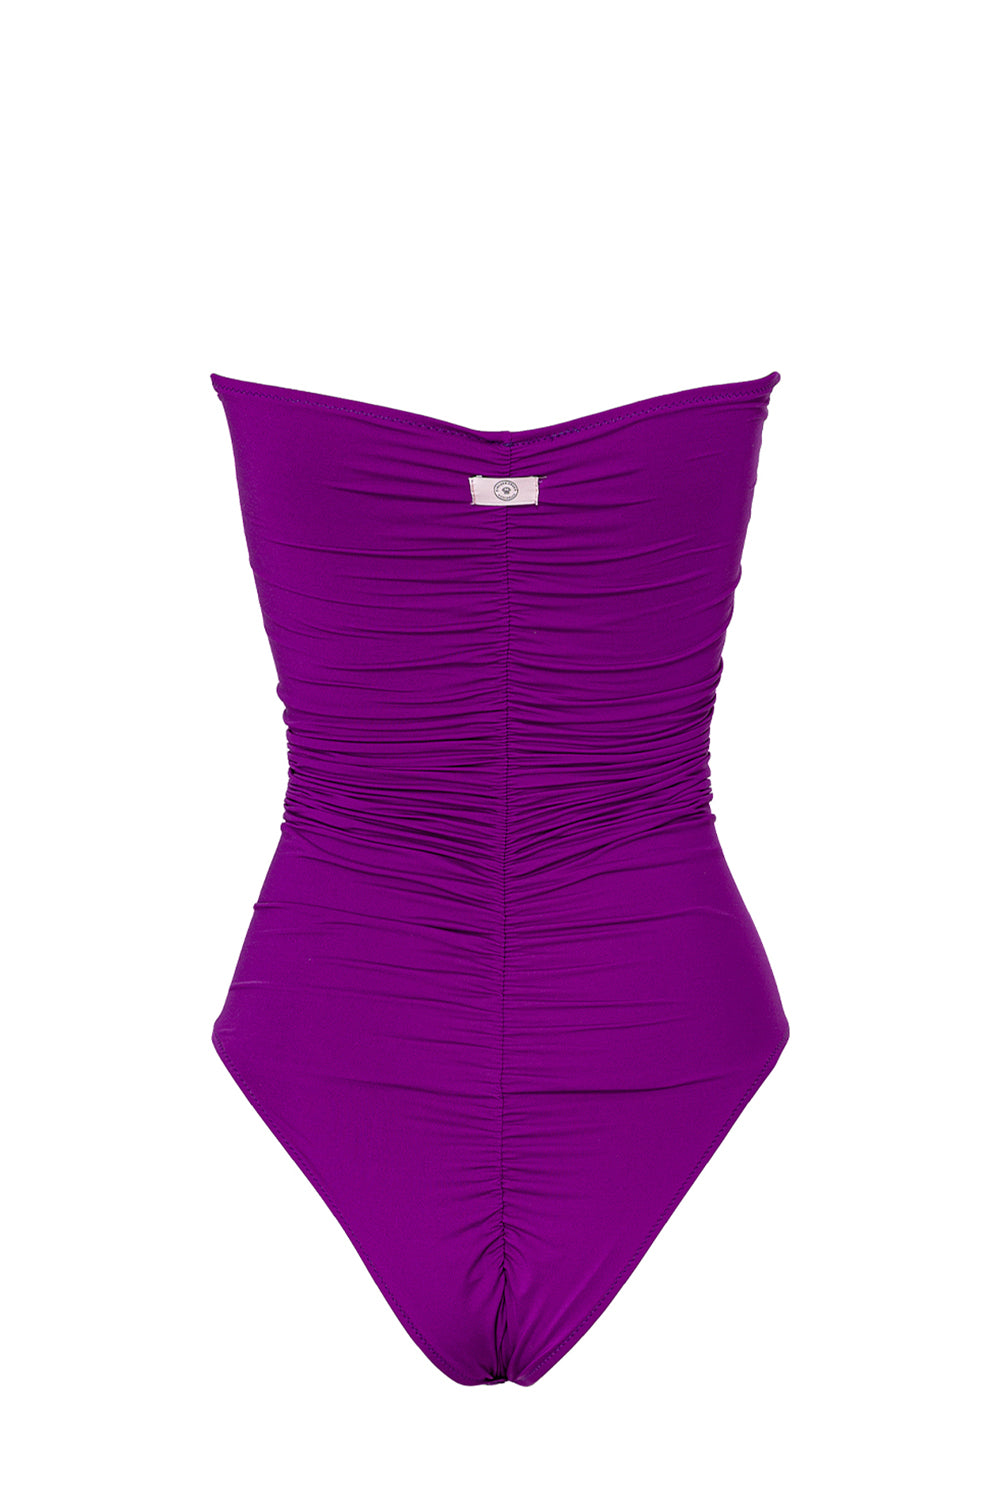 Intero Micro Purple